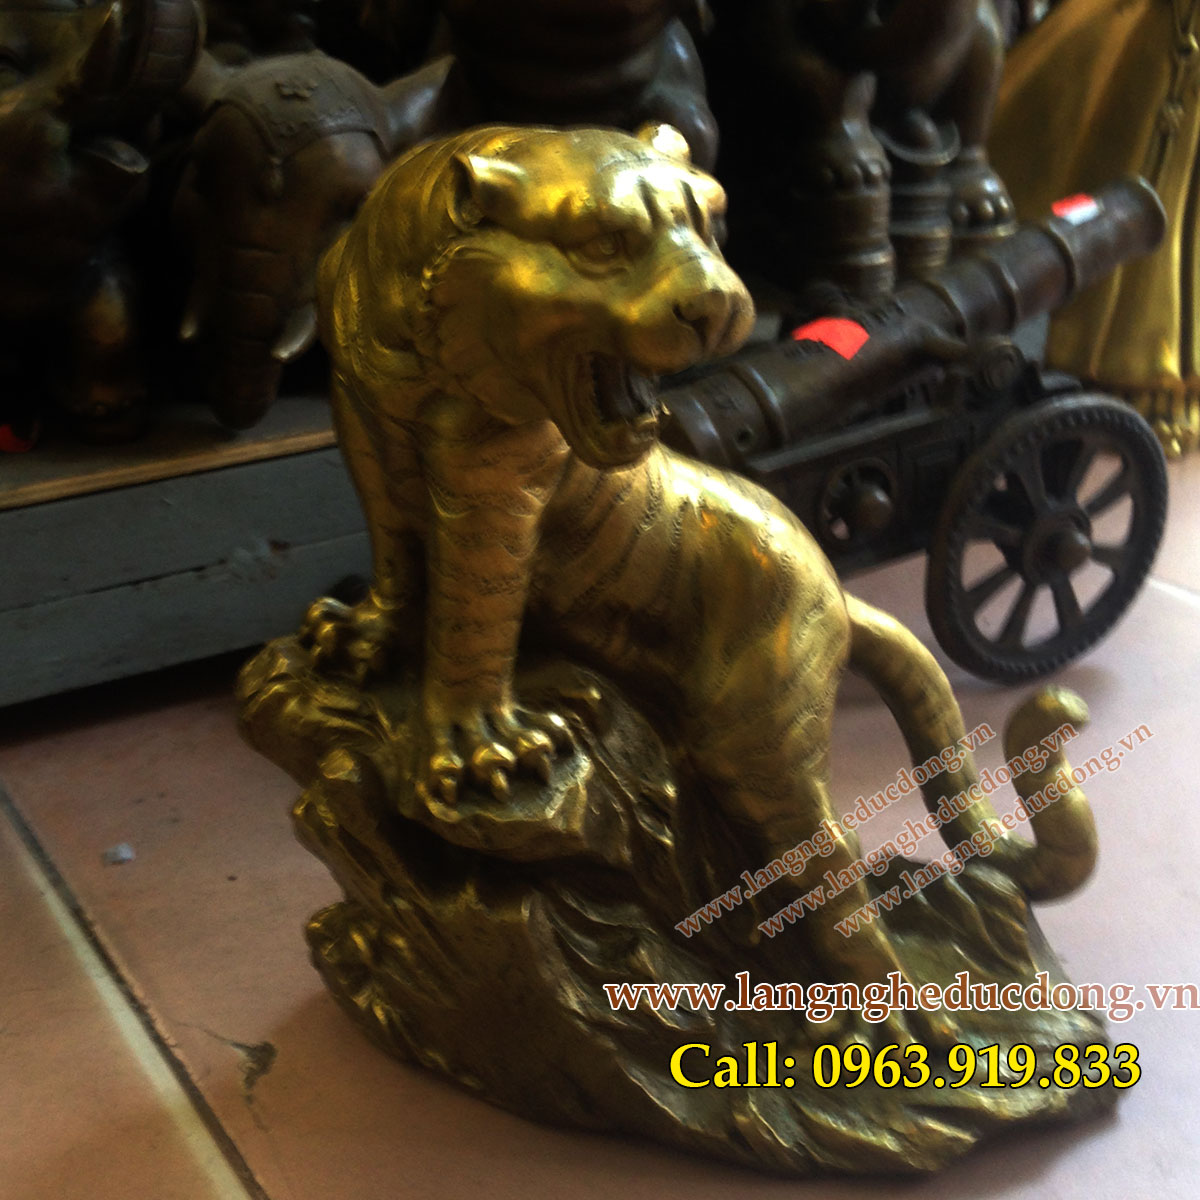 langngheducdong.vn - Tượng hổ đồng phong thủy cao 16cm, hổ bằng đồng